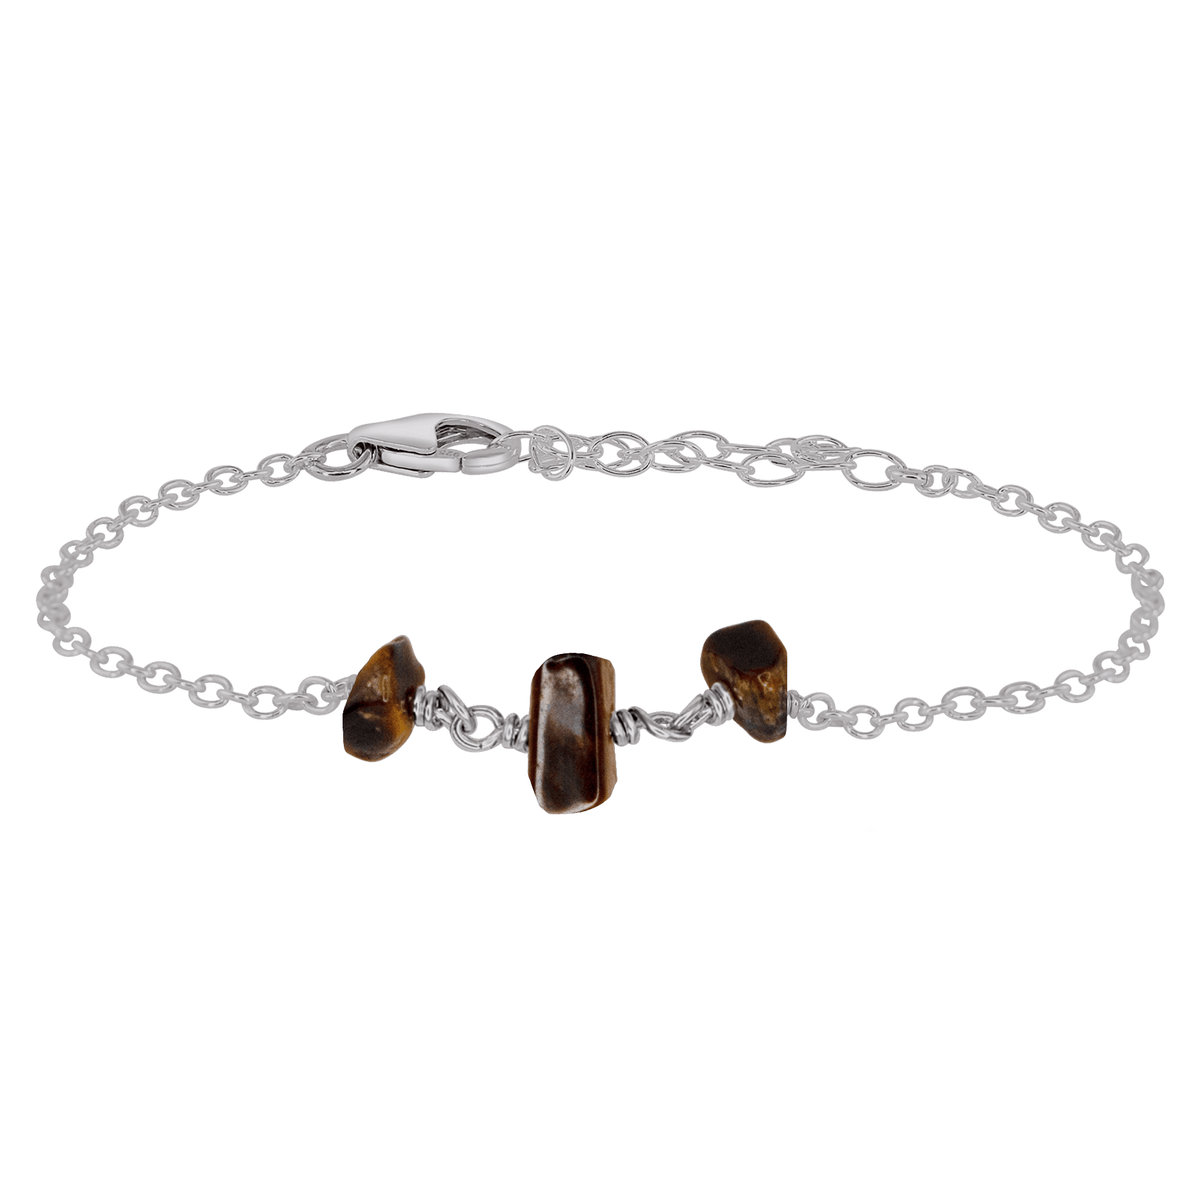 Beaded Chain Bracelet - Tigers Eye - Stainless Steel - Luna Tide Handmade Jewellery